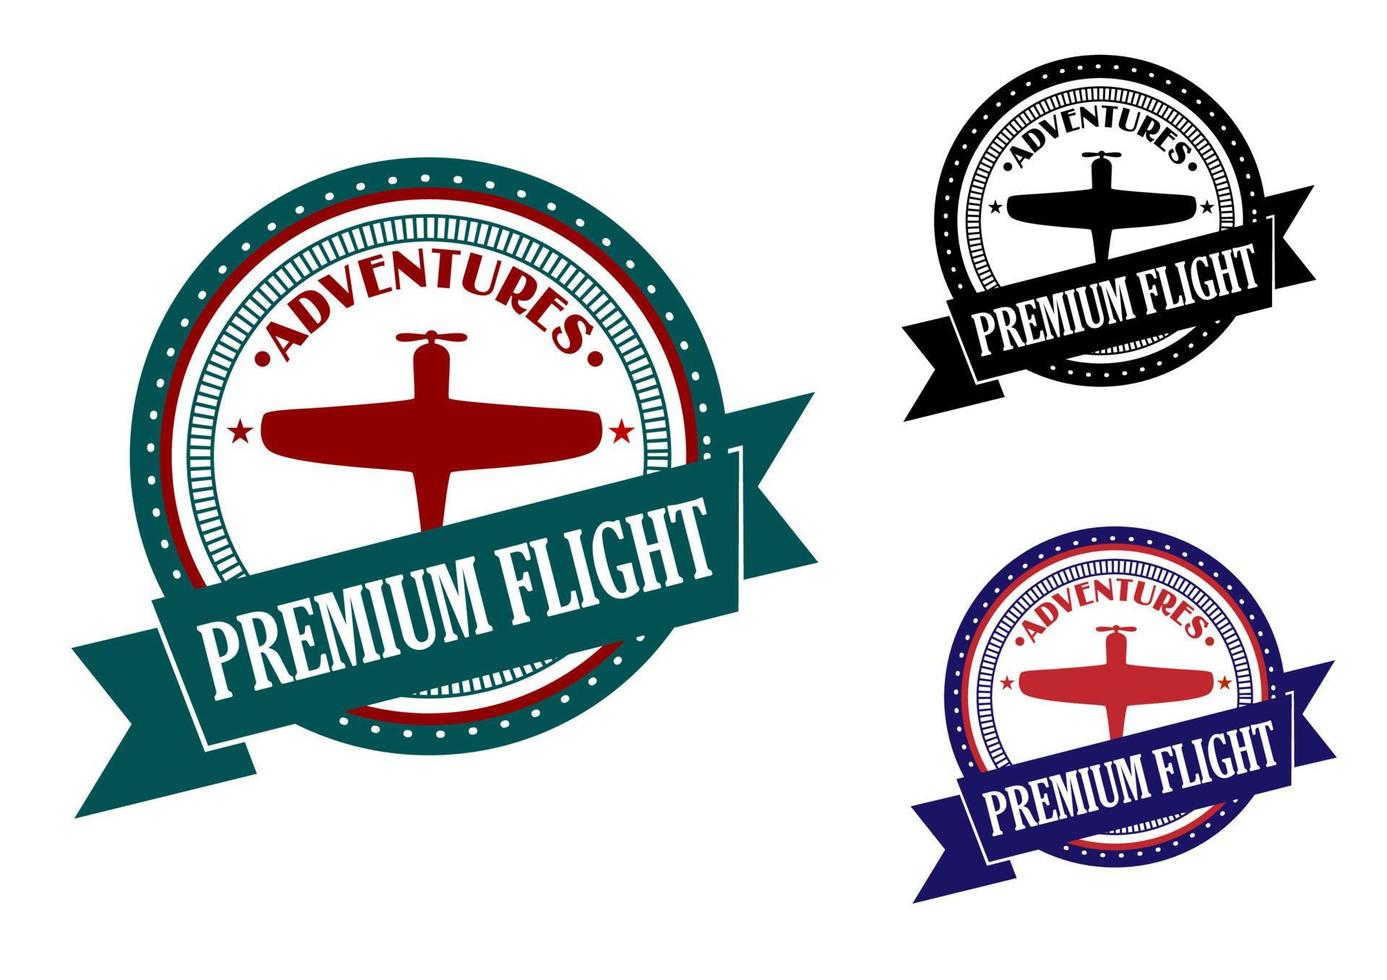 Premium flight adventures symbol vector